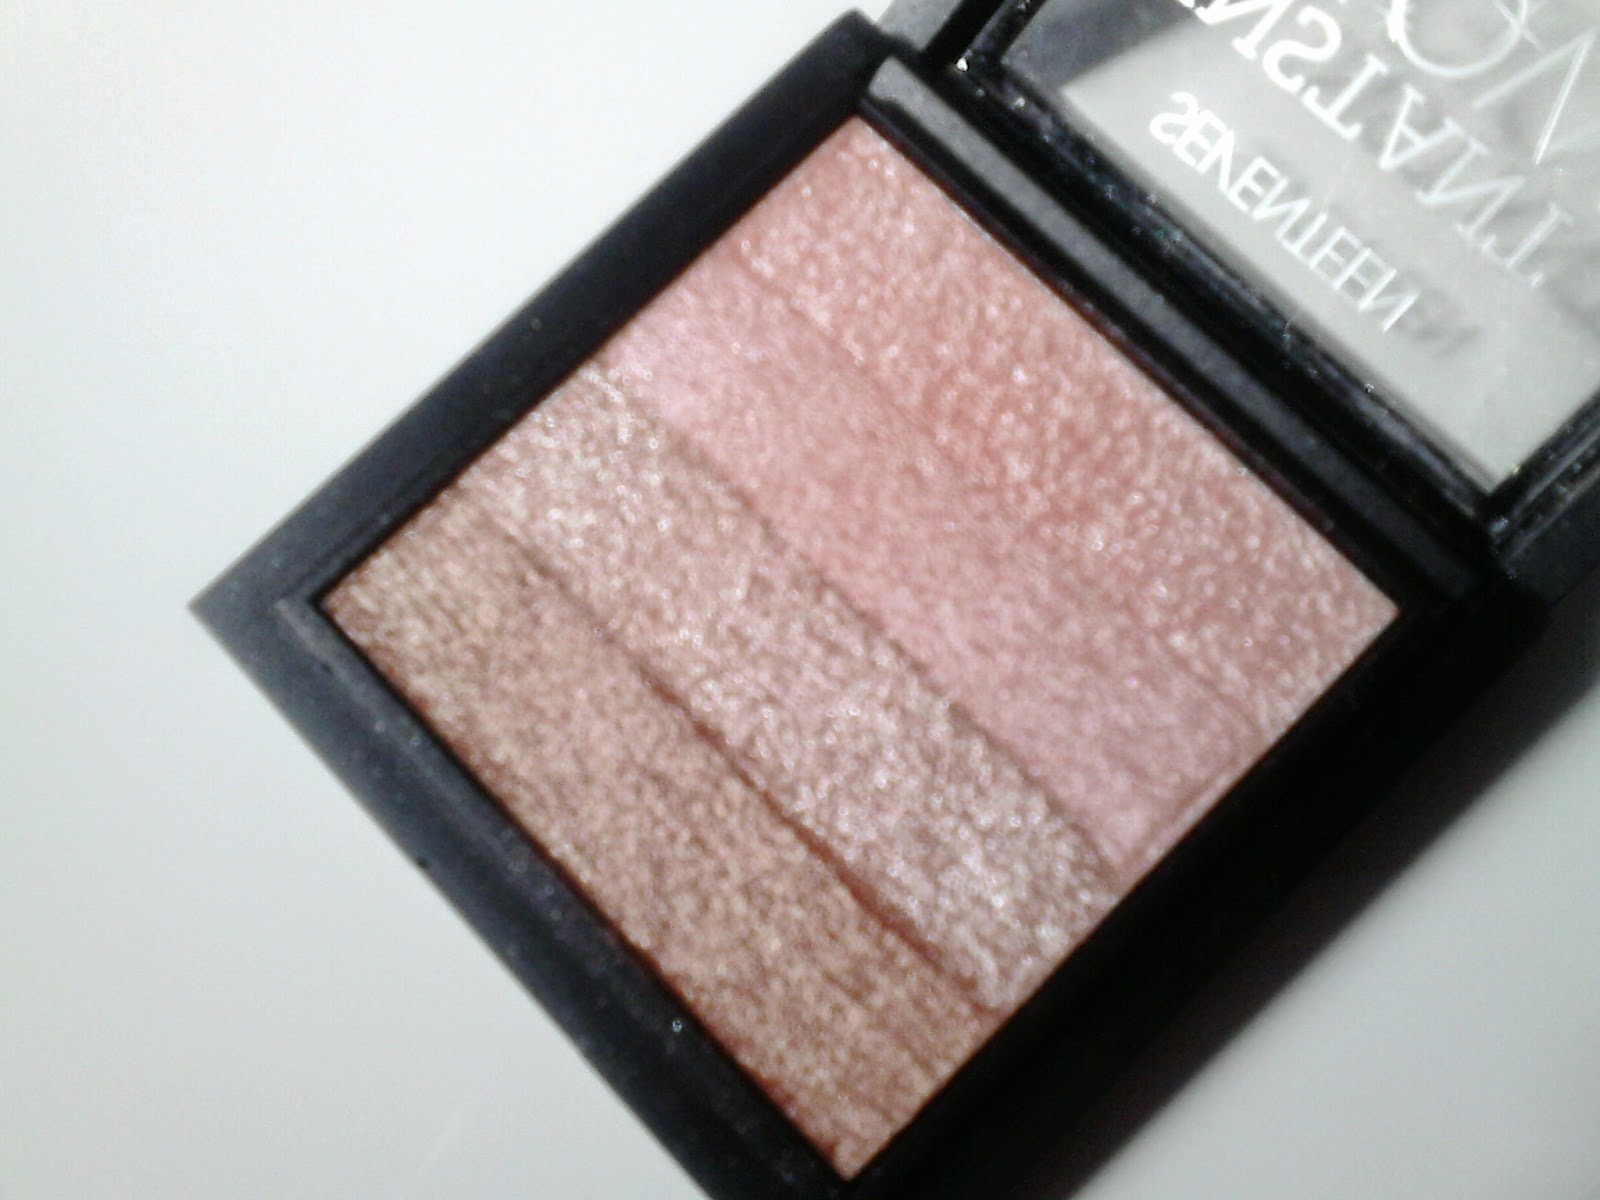 Seventeen Instant Glow Shimmer Brick Pink Bronze